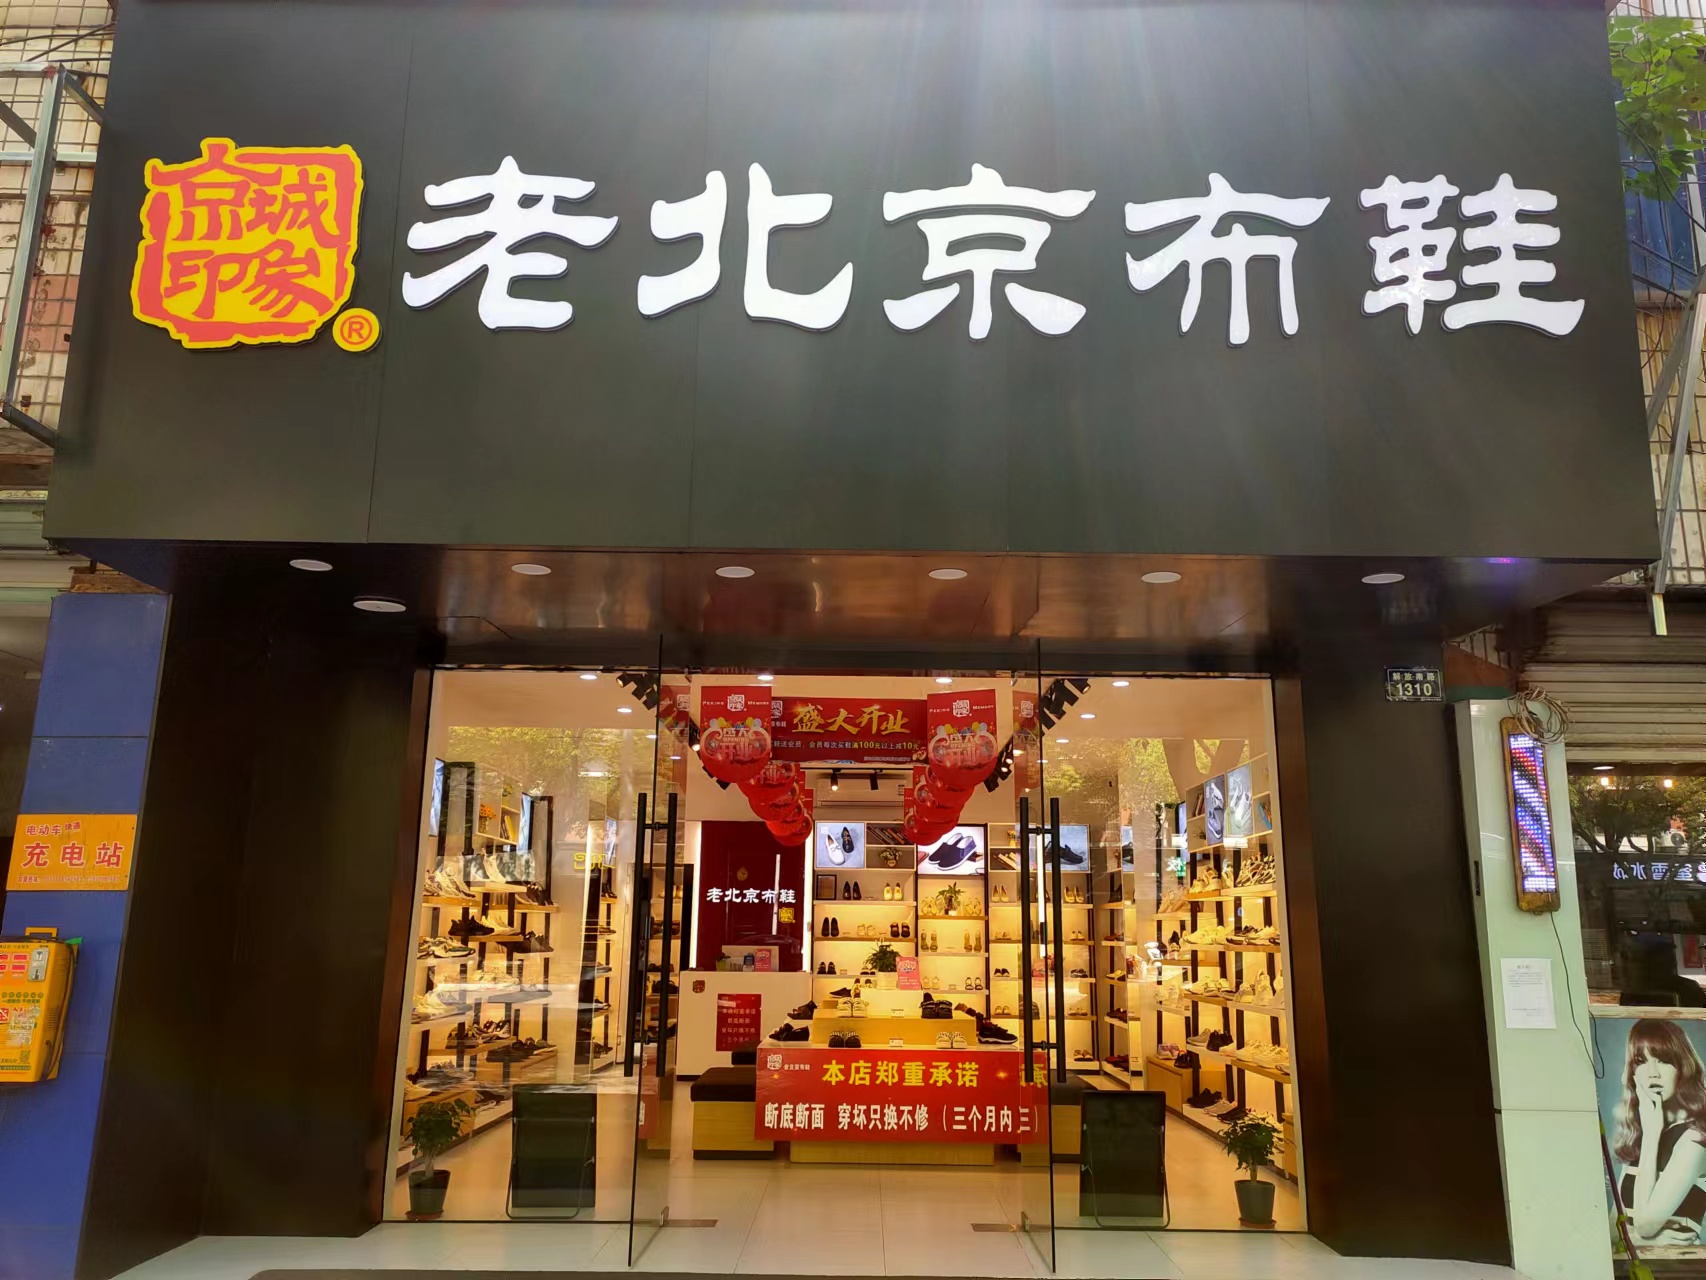 贺：京城印象老北京布鞋加盟店浙江孟老板盛大开业！